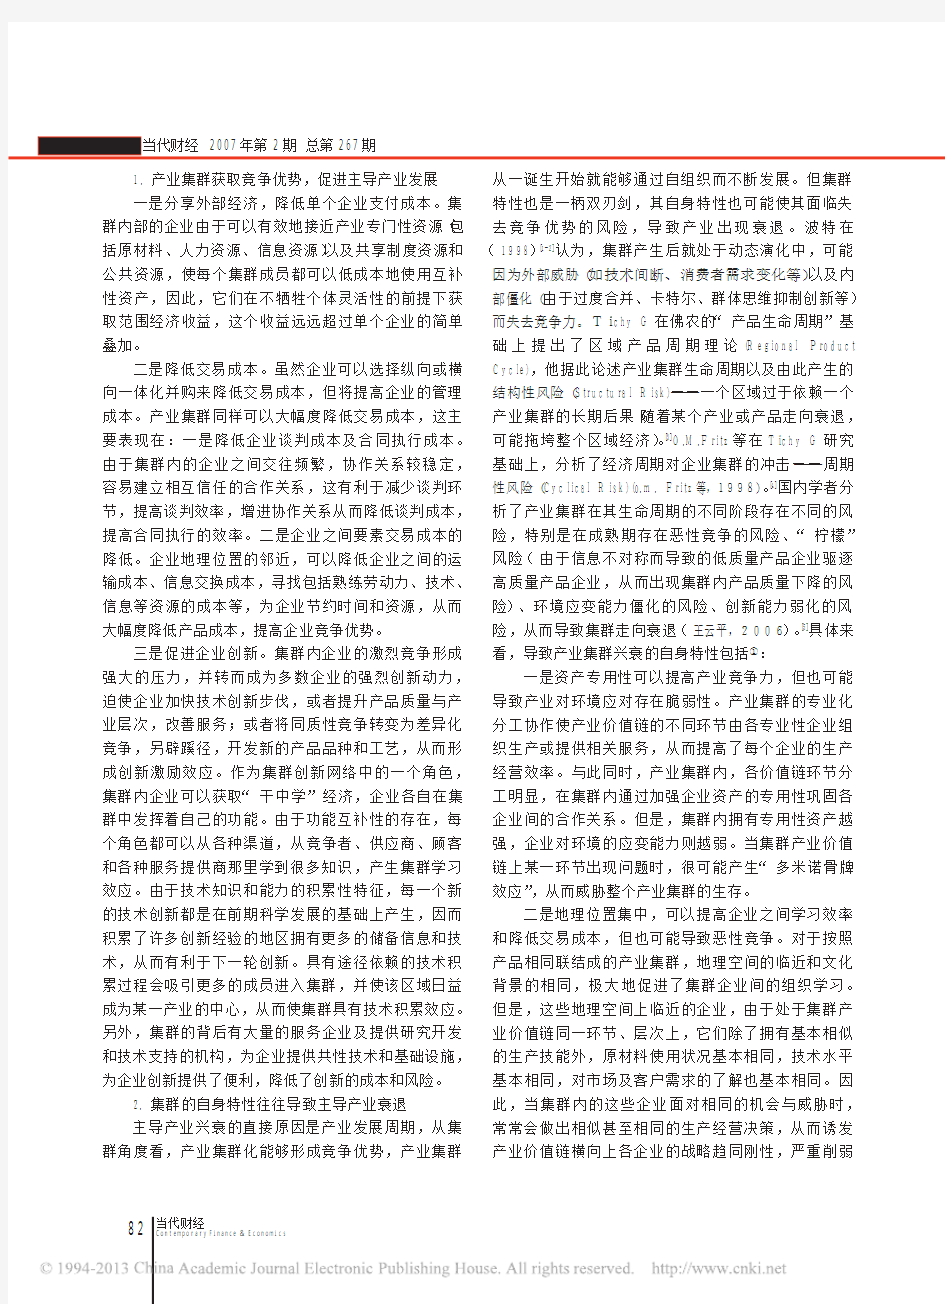 产业集群与区域产业结构调整_王云平